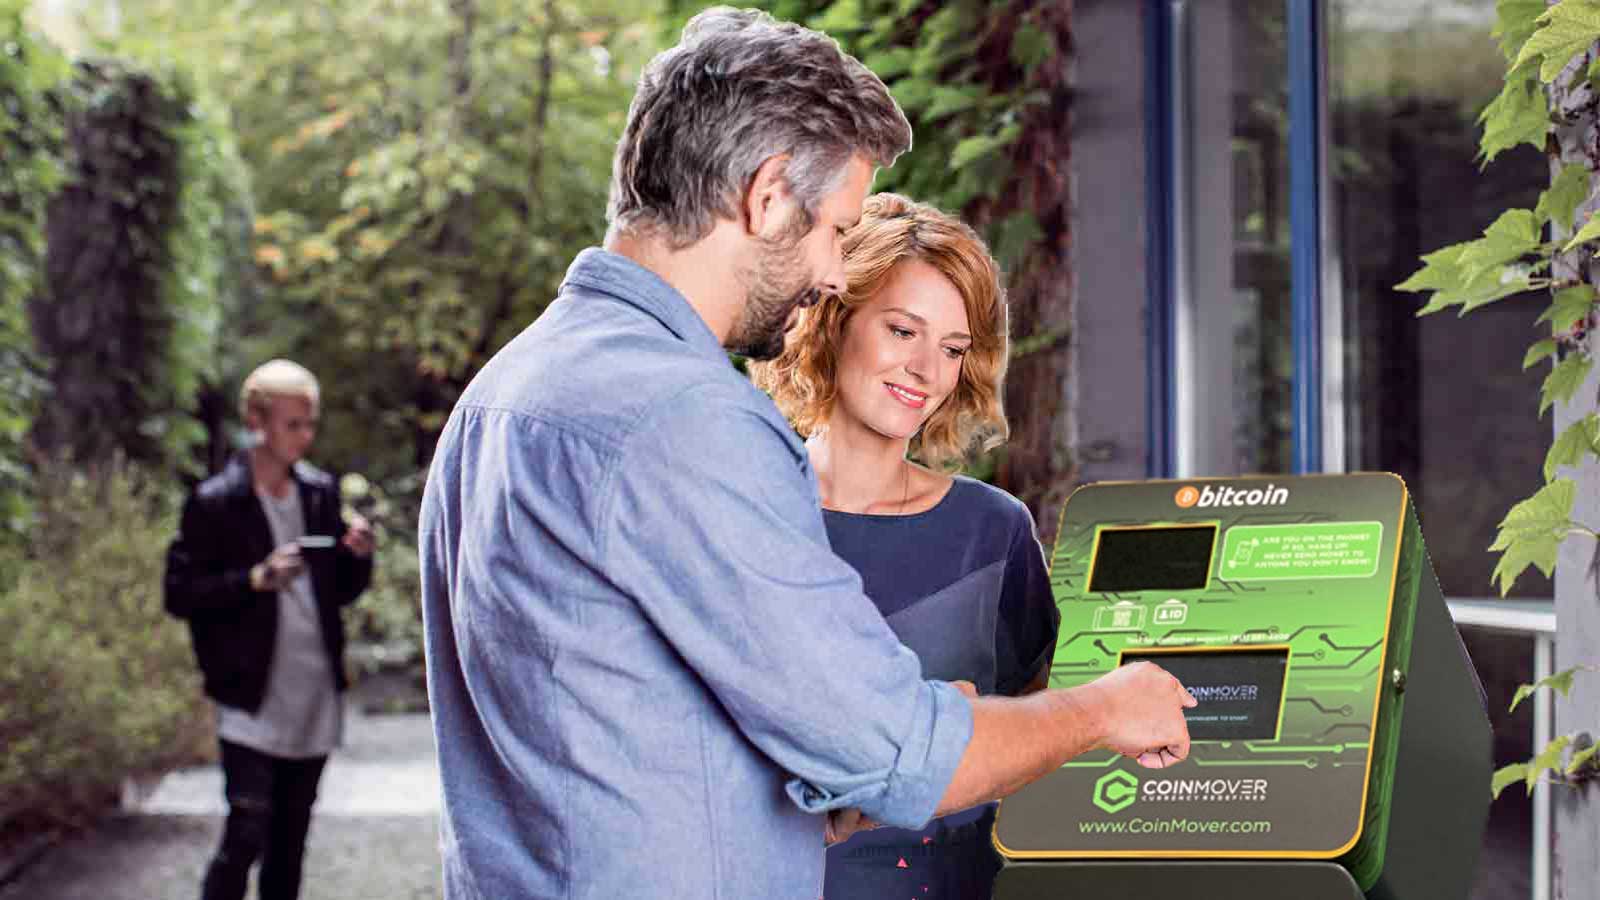 Man and woman using a CoinMover Bitcoin ATM